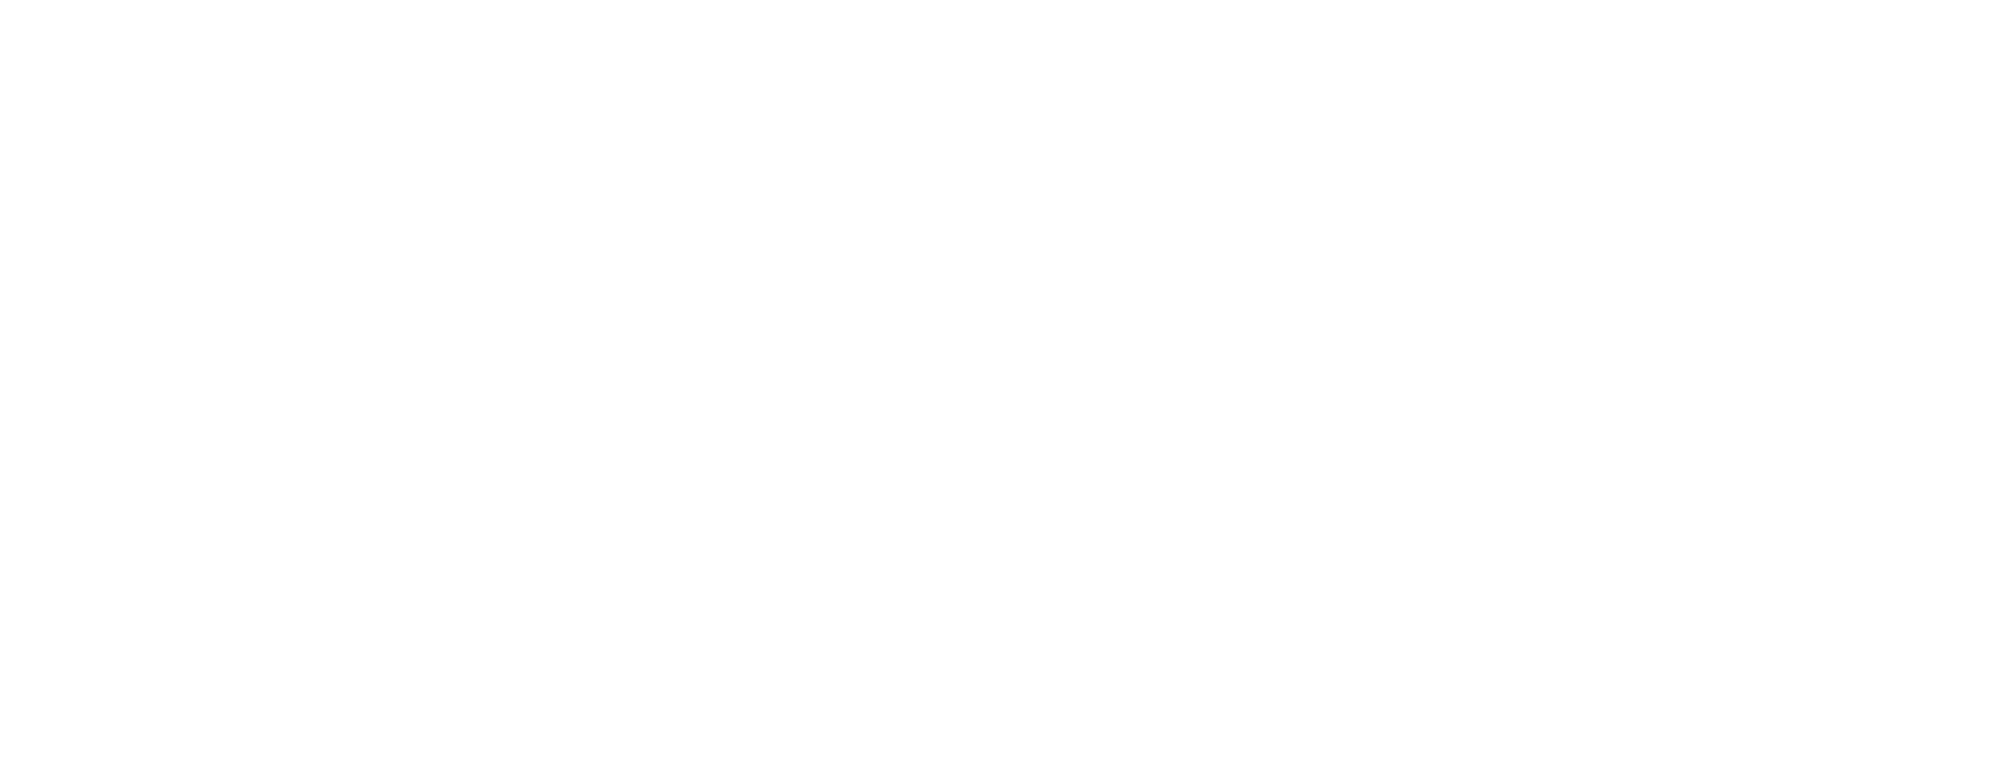 Logo de Seguros AFT enlazando a Home